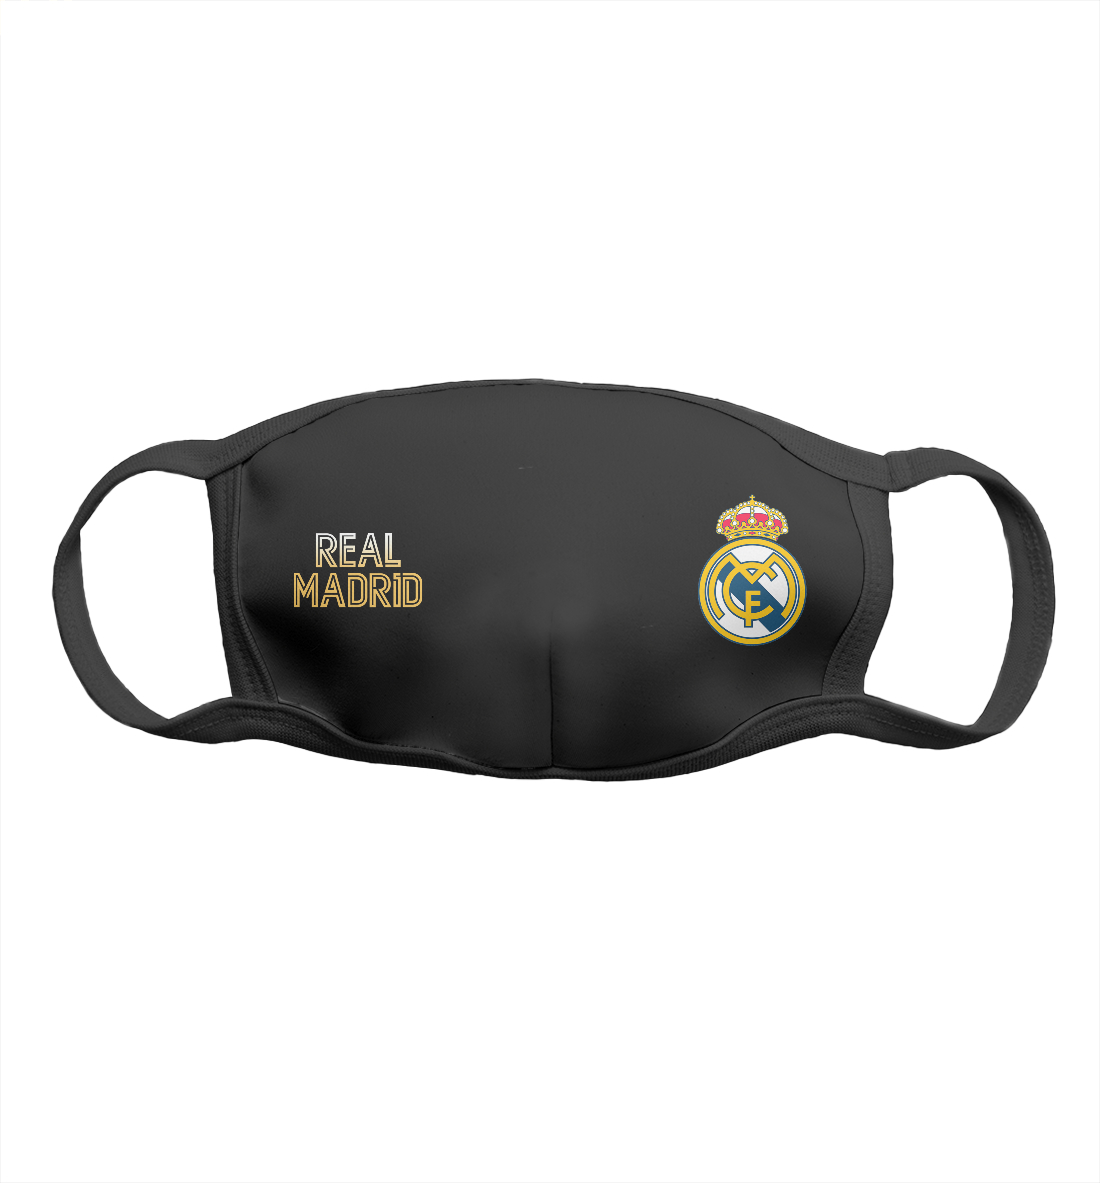 Женская Маска Real Madrid Gold, артикул REA-581283-msk-1mp